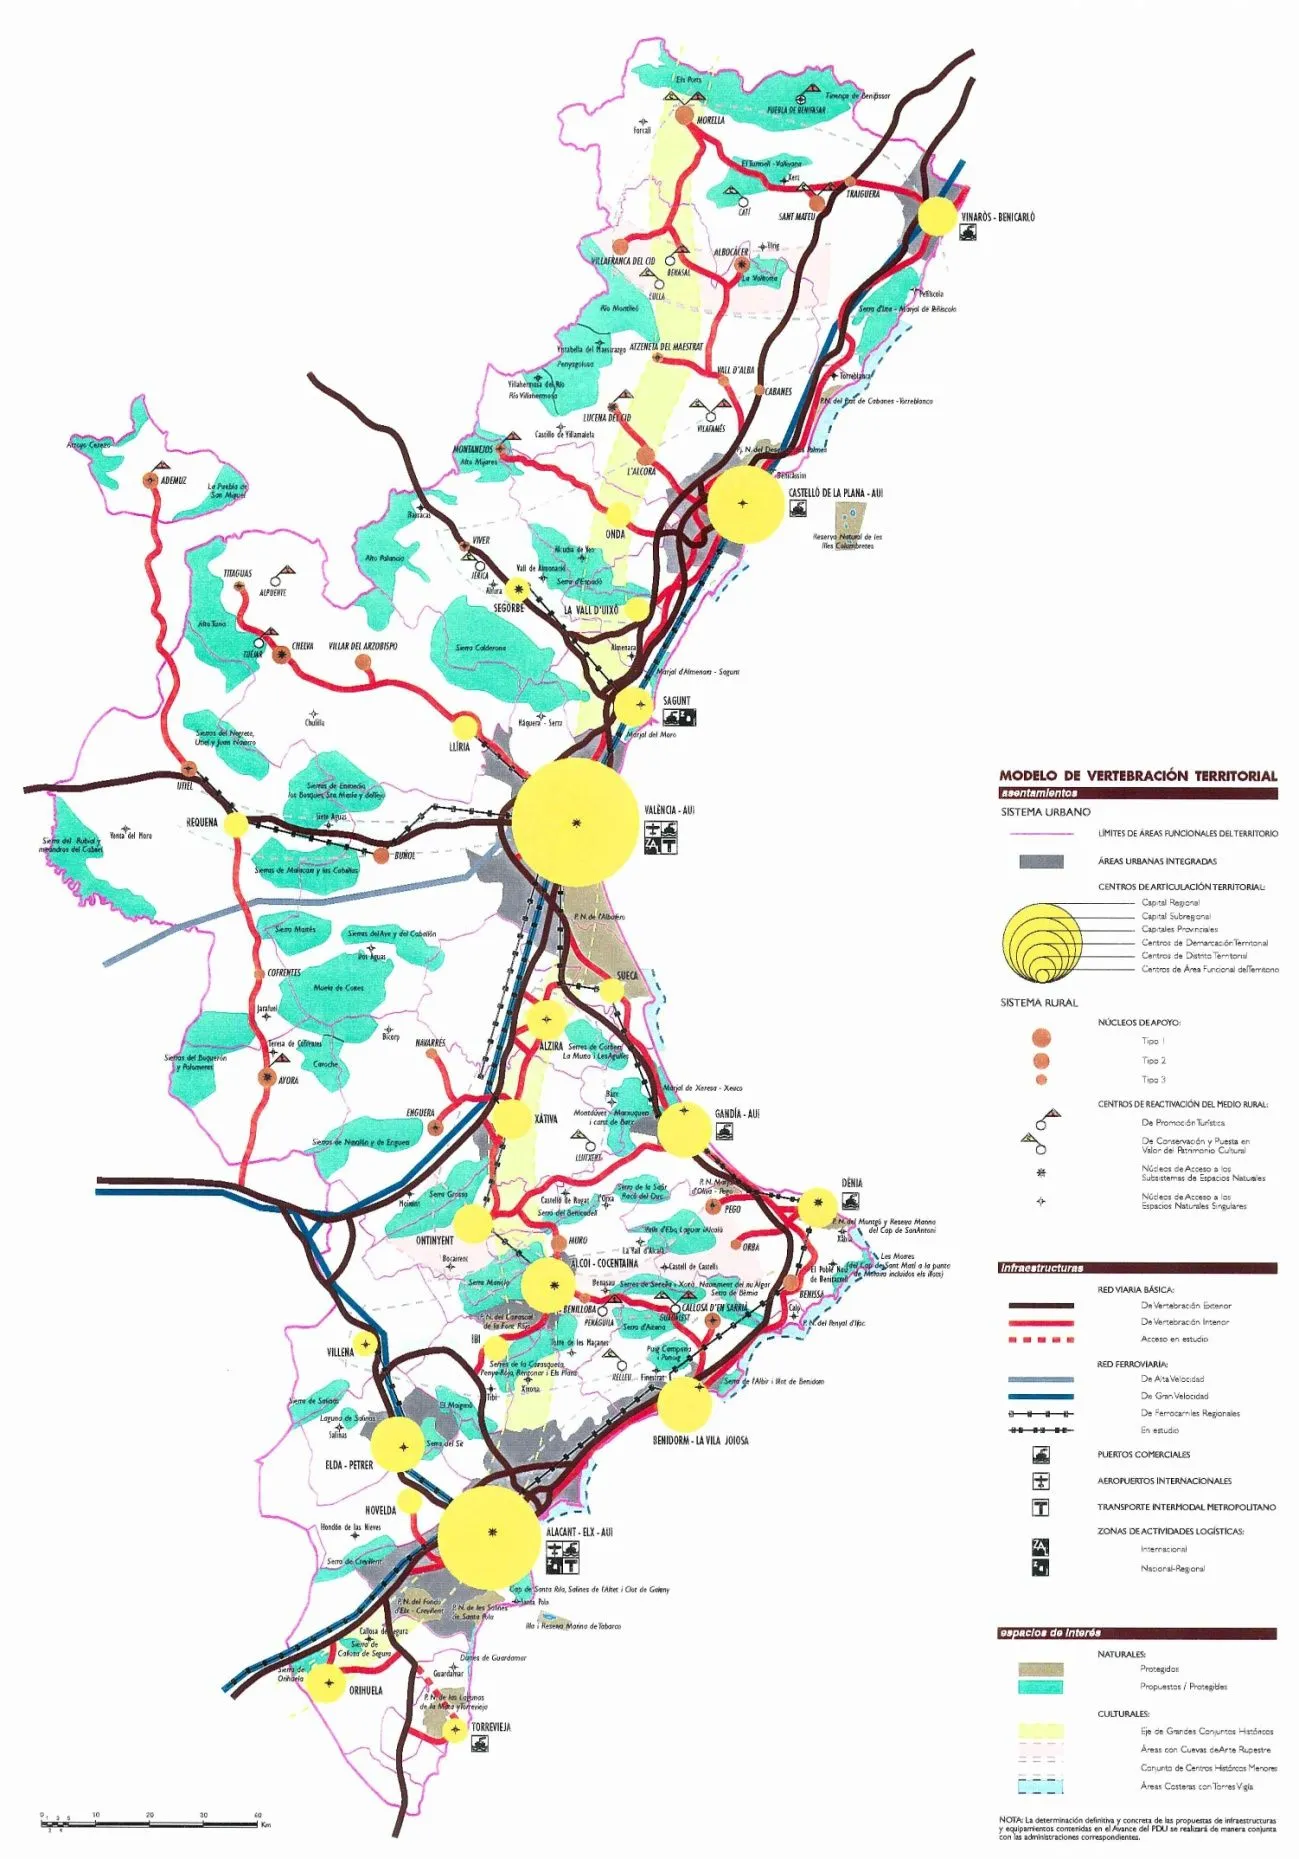 La planificación territorial en la Comunidad Valenciana (